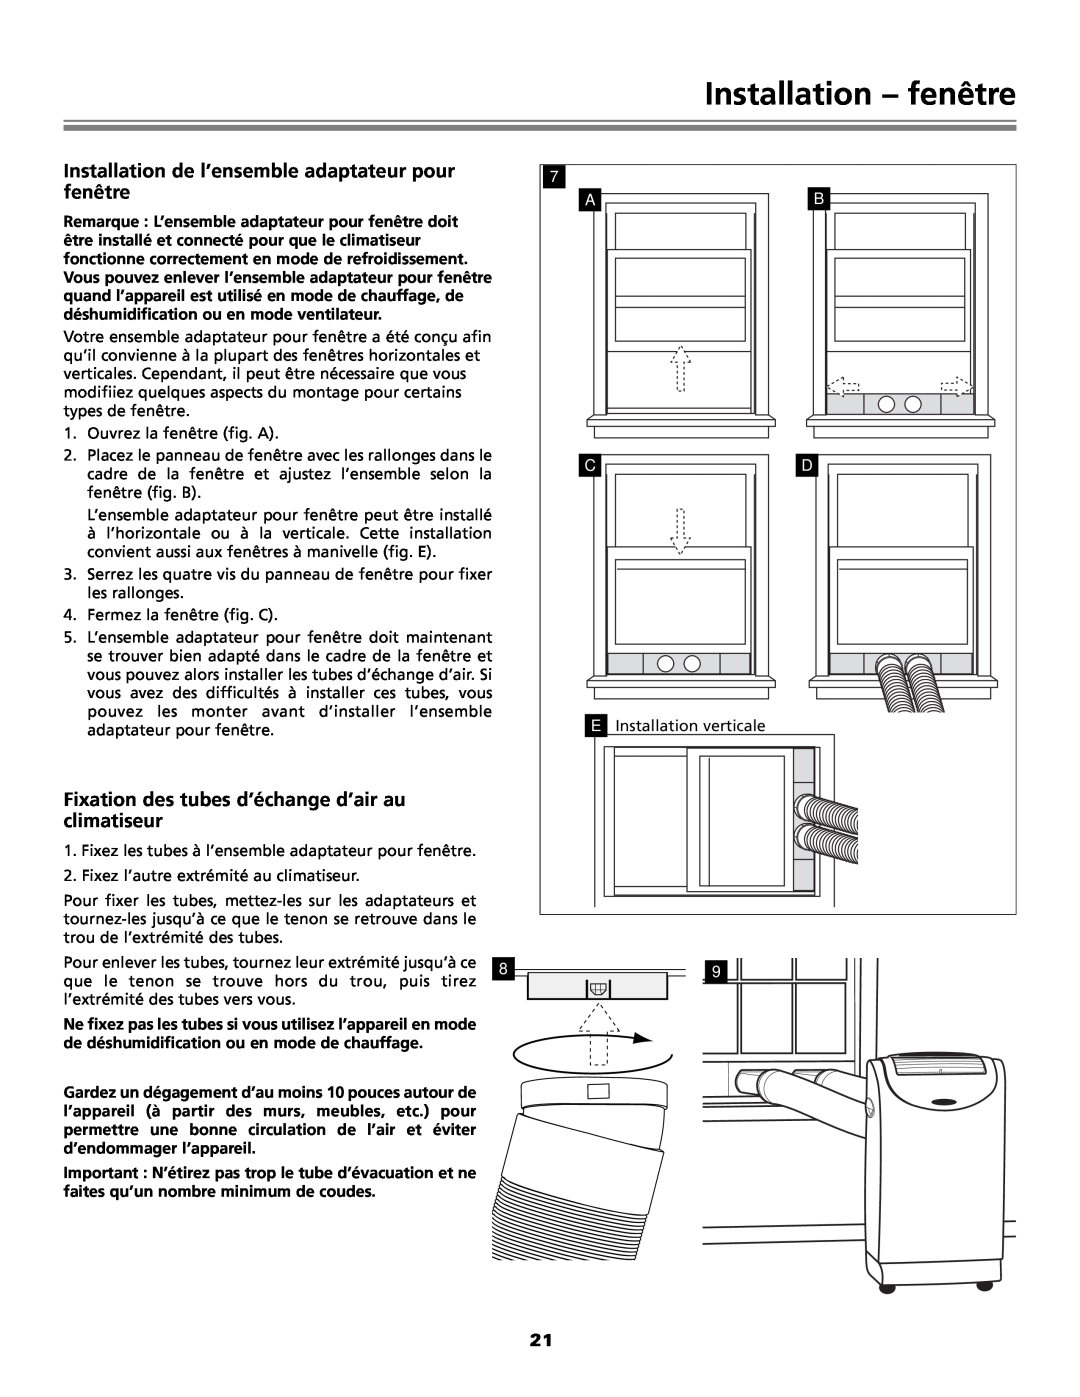 Fedders Portable Dehumidifier Installation - fenêtre, Installation de l’ensemble adaptateur pour, climatiseur 